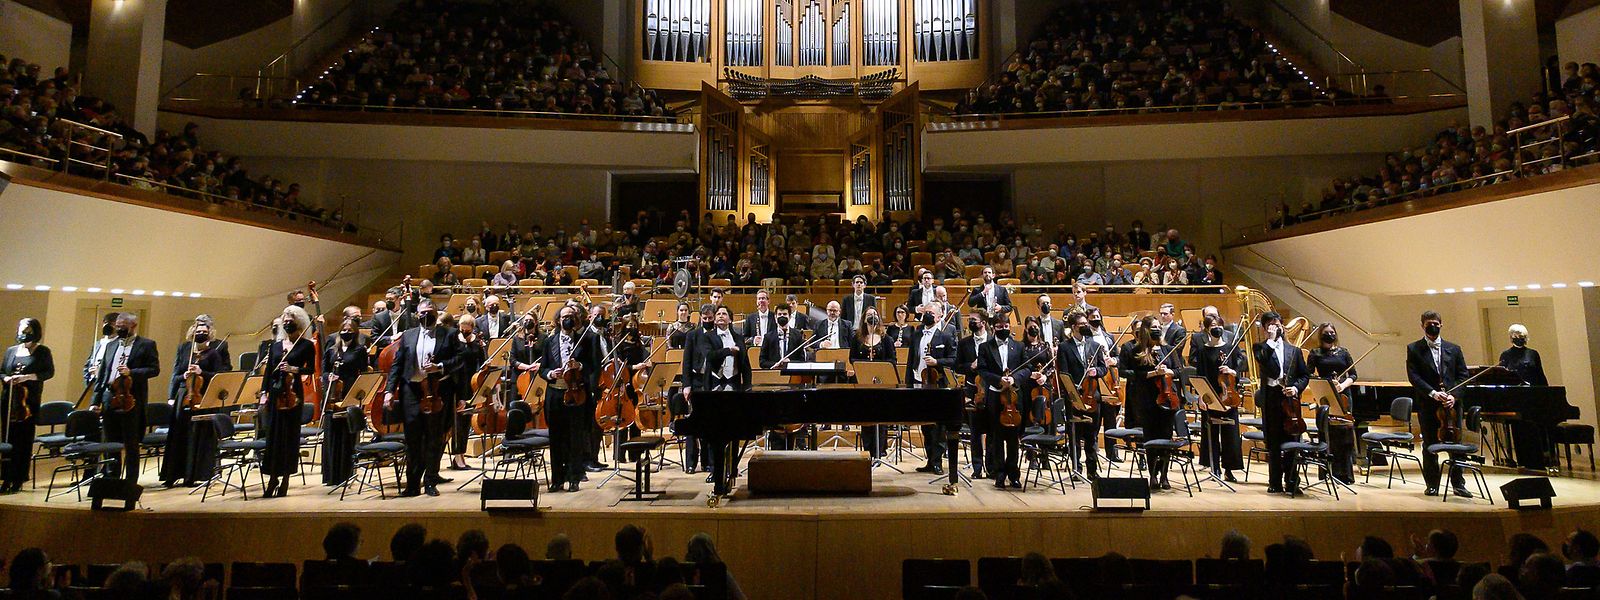 Après 2016 et 2018, Gustavo Gimeno et les musiciens de l'OPL retrouvent l'«Auditorio Nacional de Música» de la capitale espagnole.
